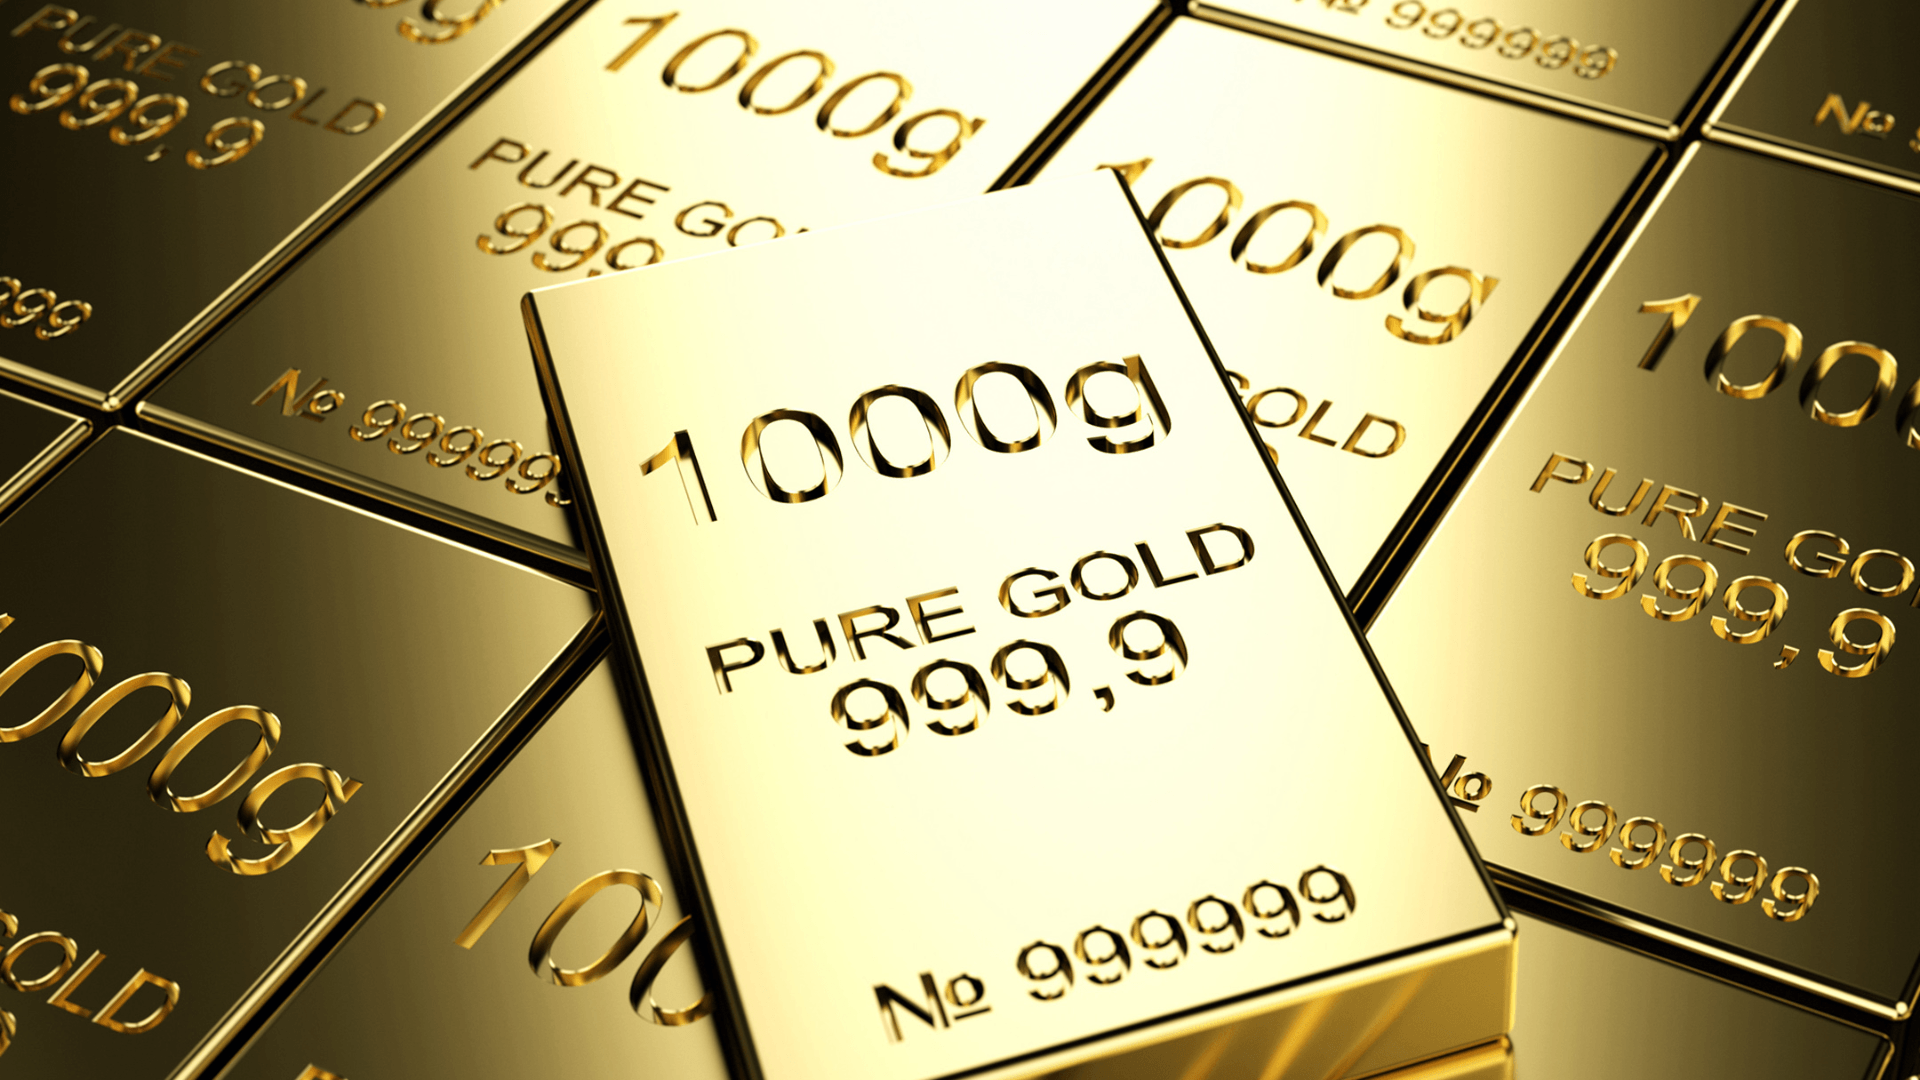 100+ Free Gold Bar & Gold Images - Pixabay